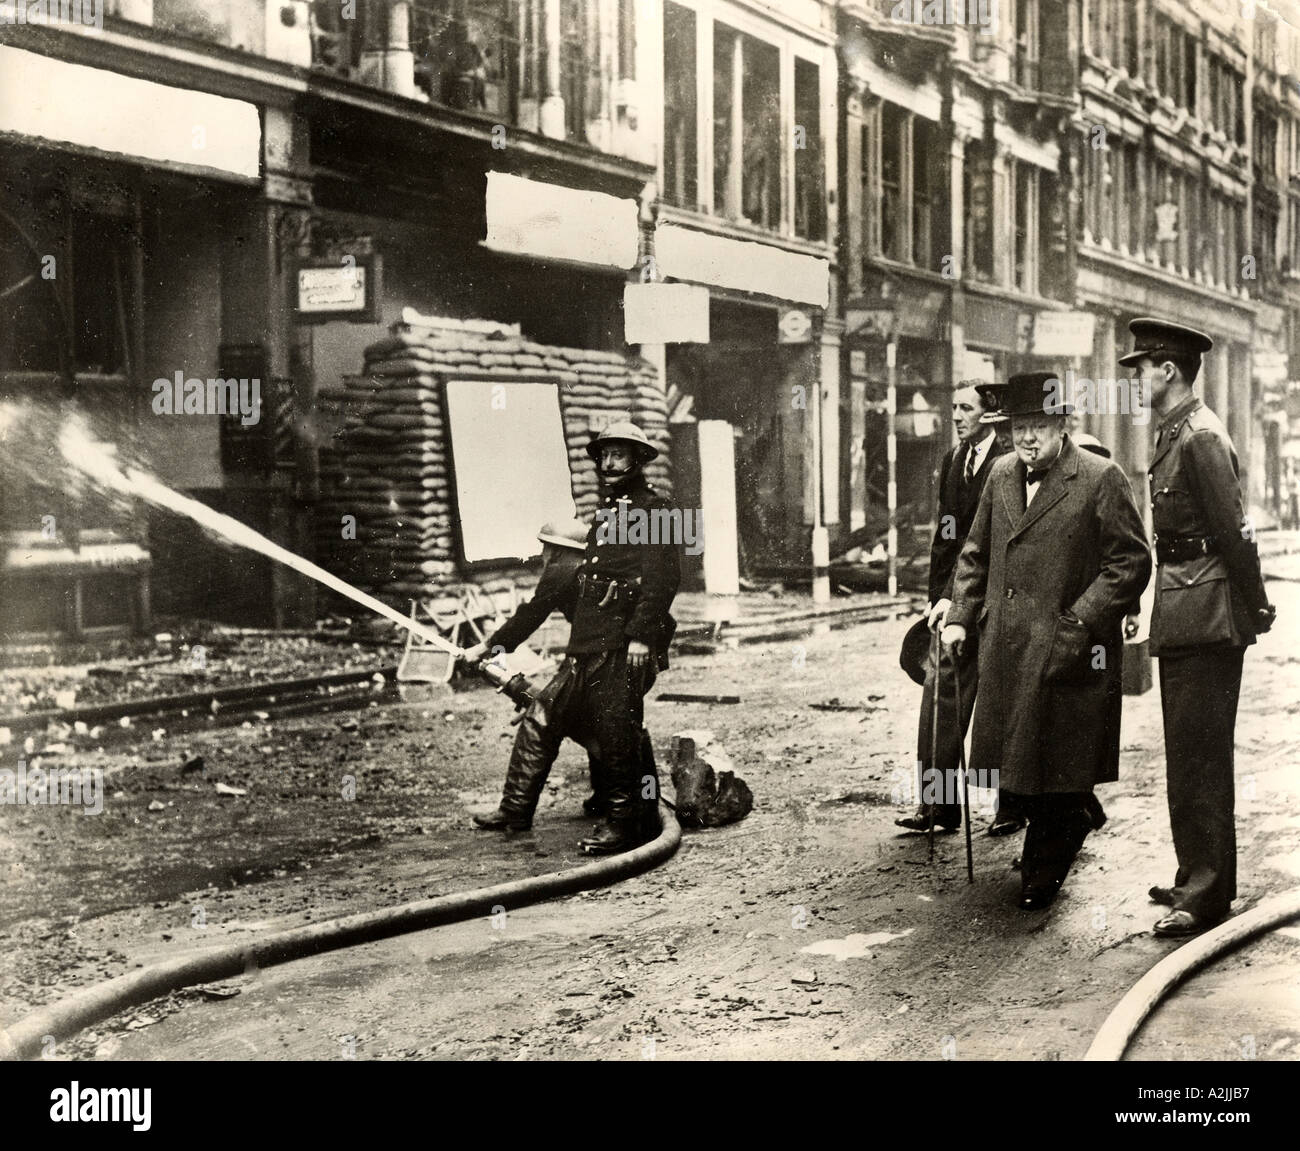 WINSTON CHURCHILL ispeziona i danni della bomba su Ludgate Hill, Londra, dopo un tedesco air raid in ottobre 1940. Vedere la descrizione seguente. Foto Stock